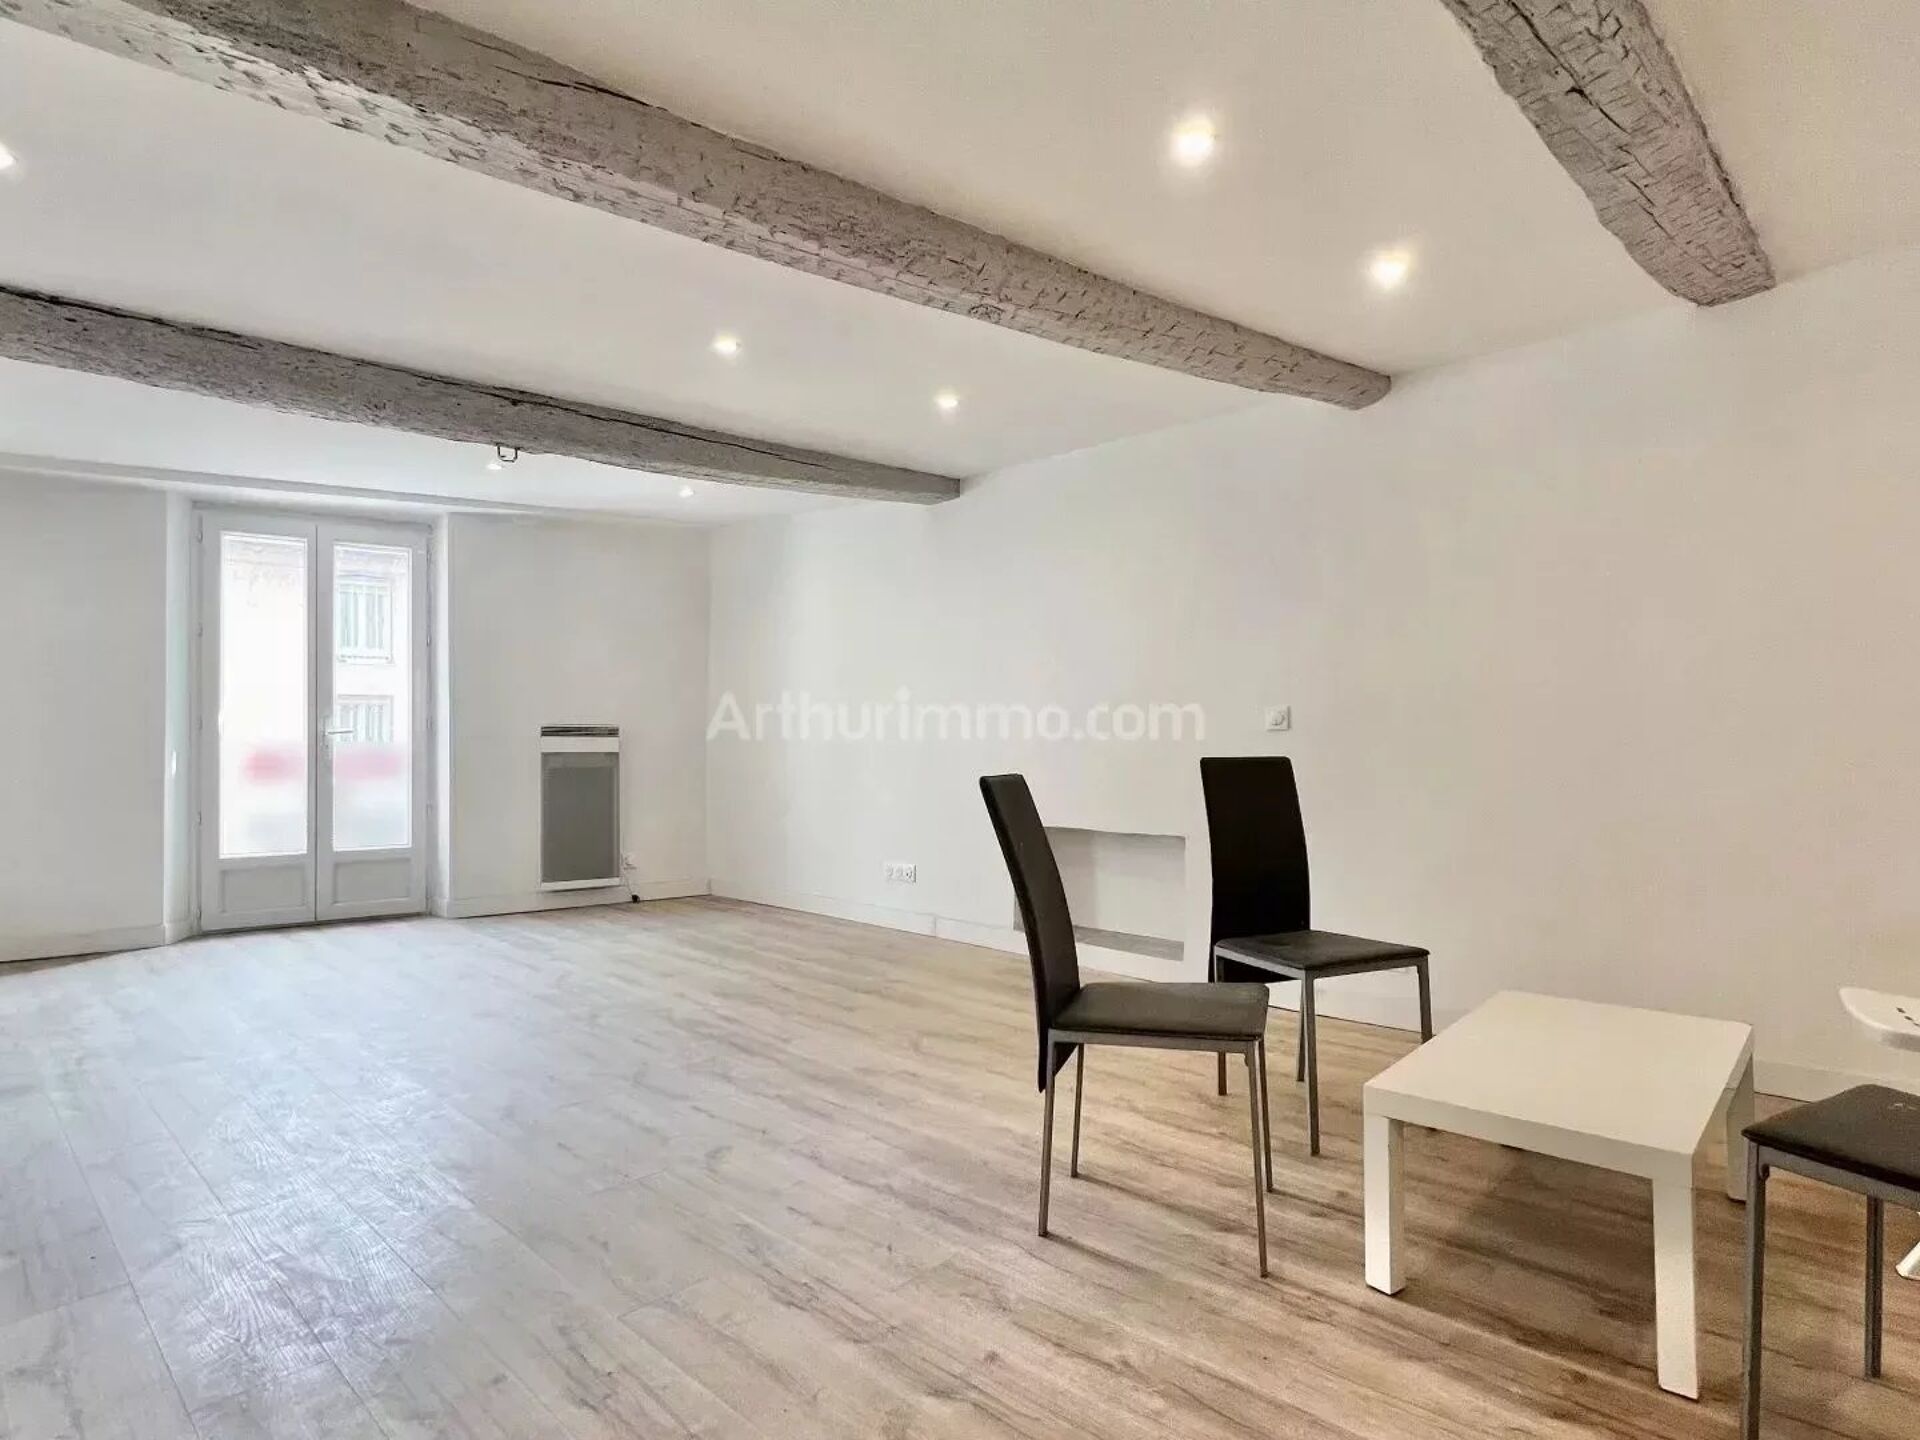 Vente Appartement 41m² 1 Pièce à Fréjus (83600) - Arthurimmo